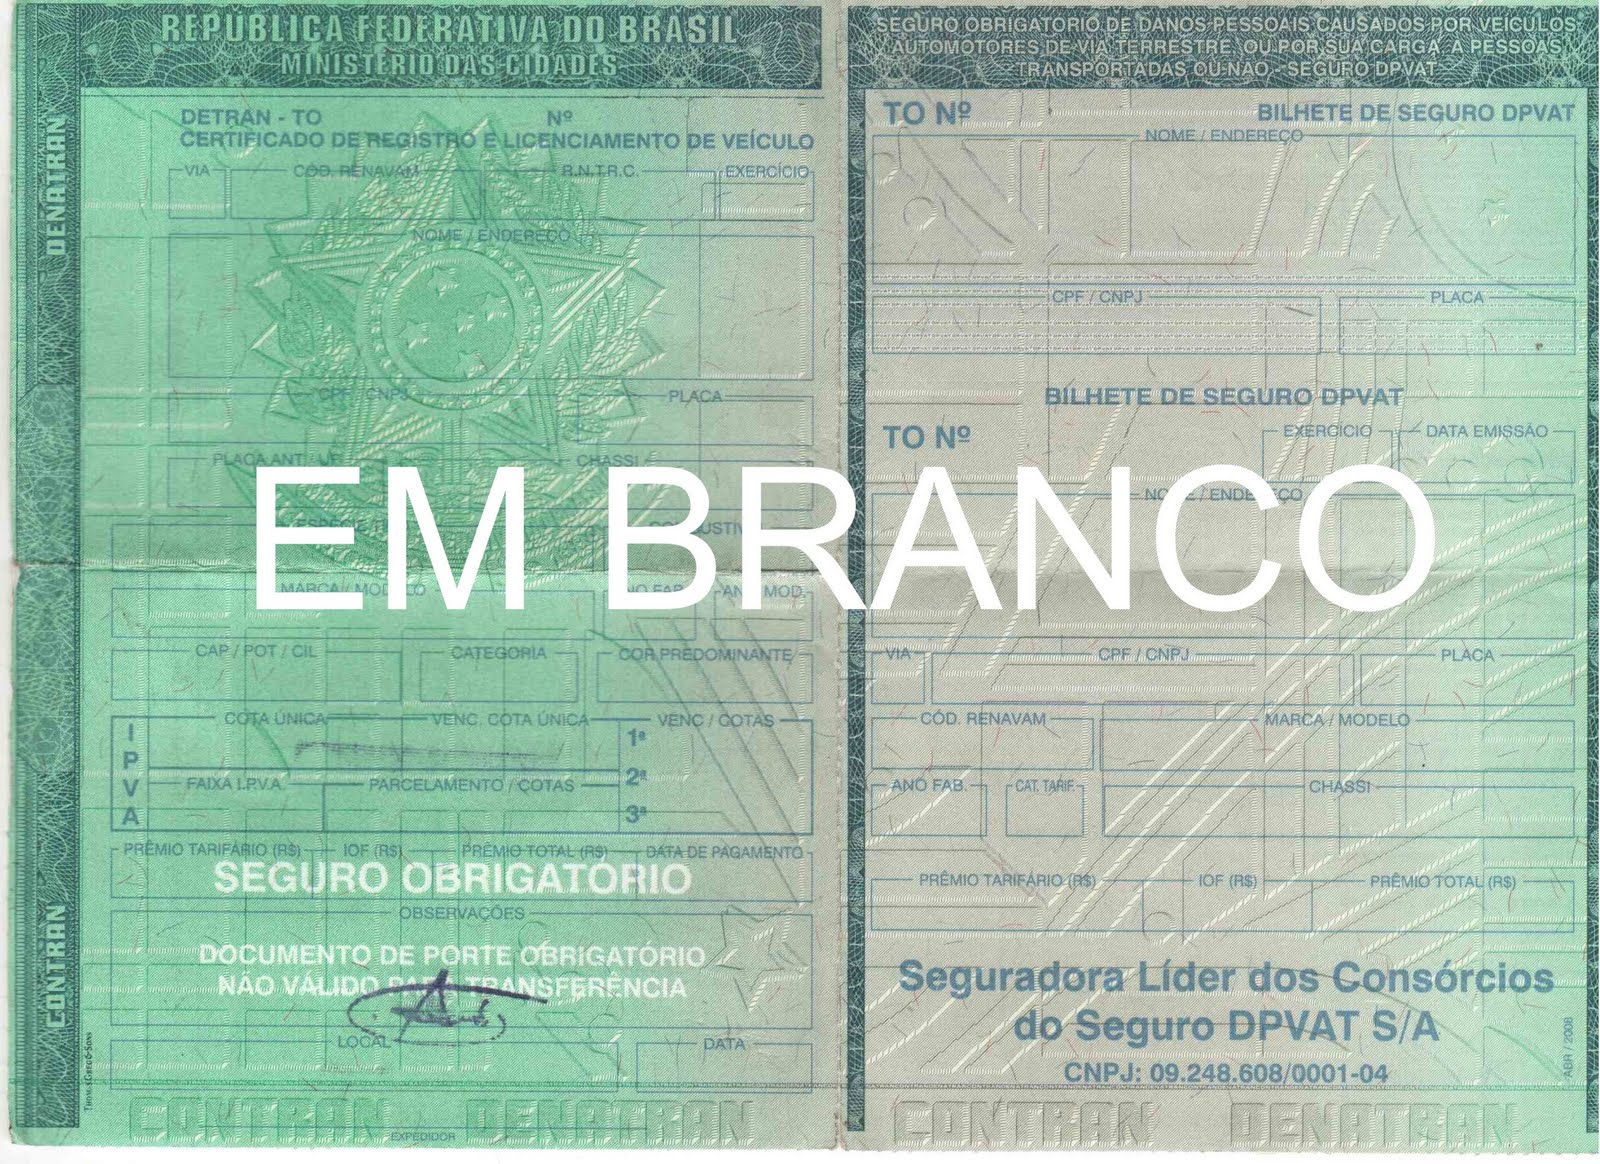 CRLV Certificado de Registro e Licenciamento de Veículo documento obrigatório denatran